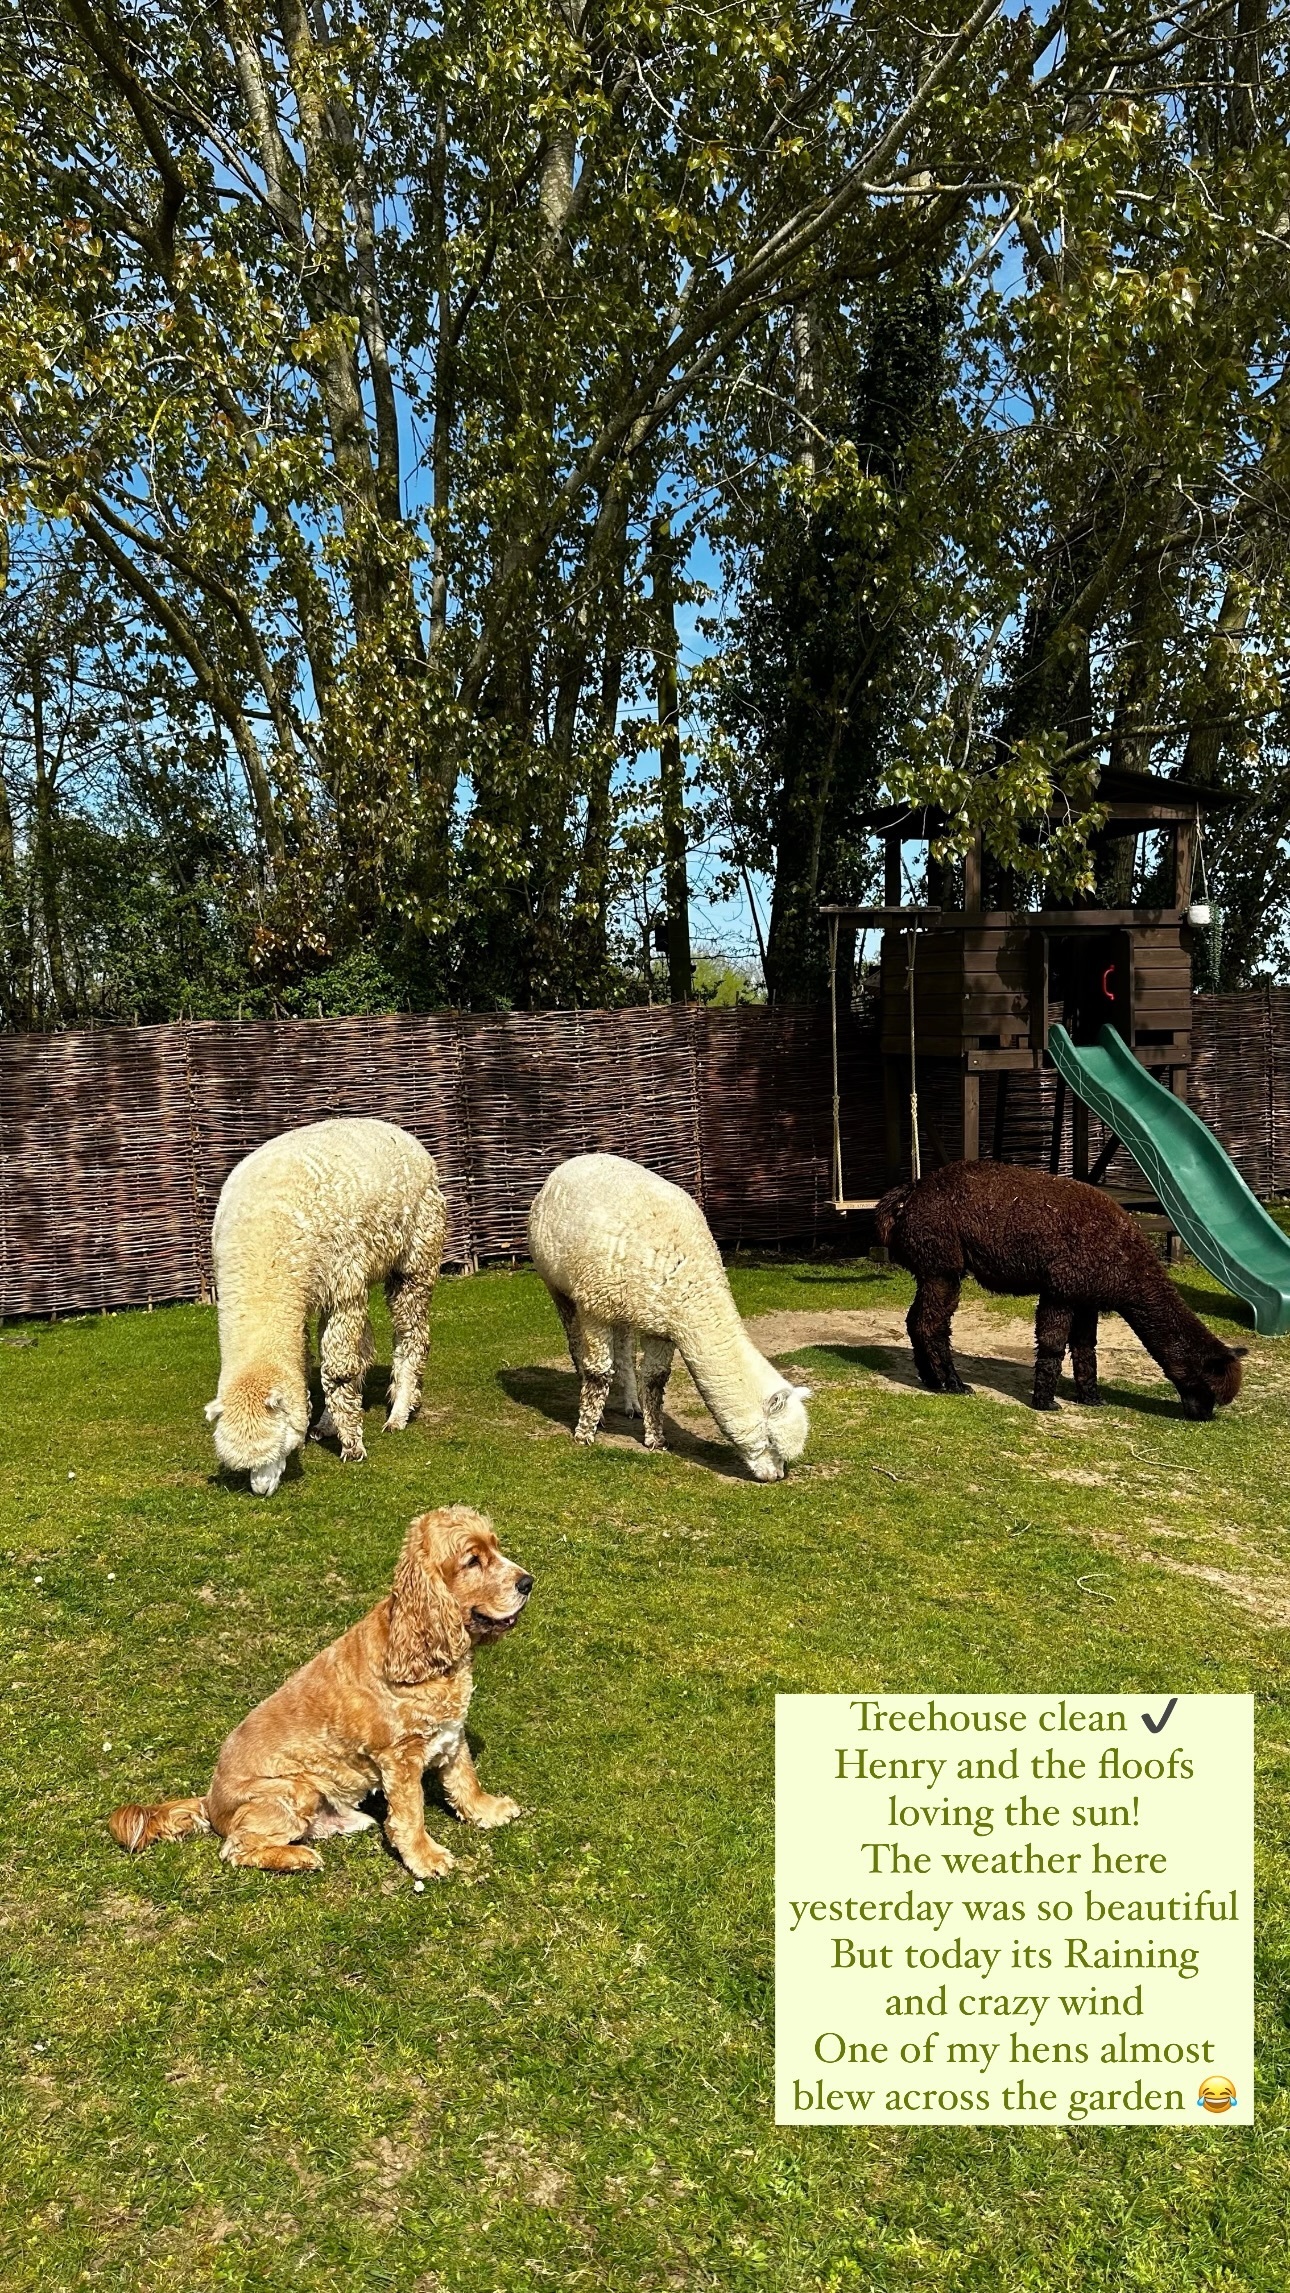 Nach der Reinigung teilte Sophie ein bezauberndes Bild von ihrem Hund Henry neben ihren drei Alpakas